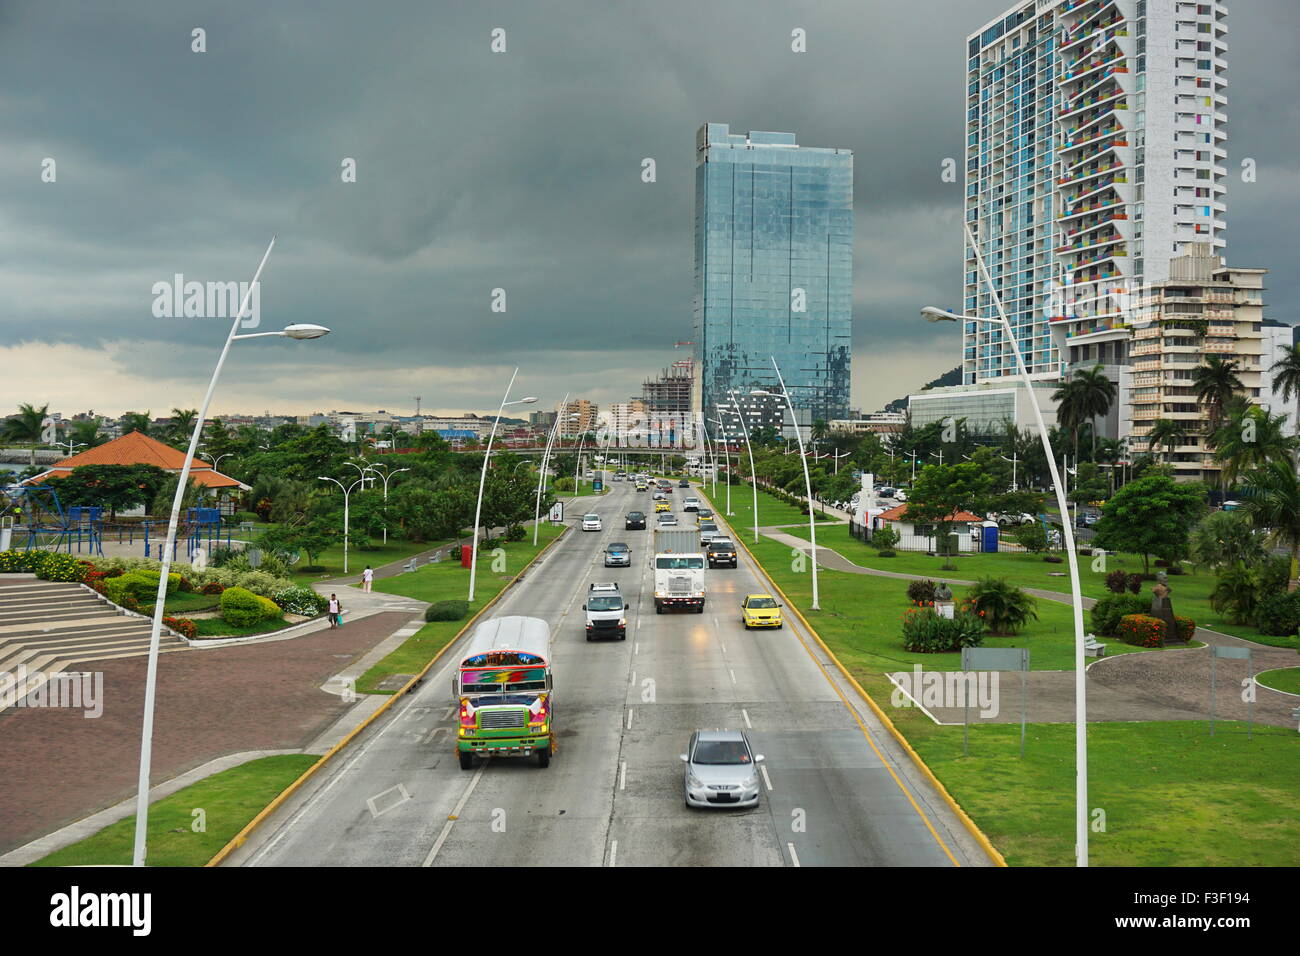 Automobili e camion sull'autostrada nella città di Panama con edifici e cielo molto nuvoloso in background, Panama America Centrale Foto Stock